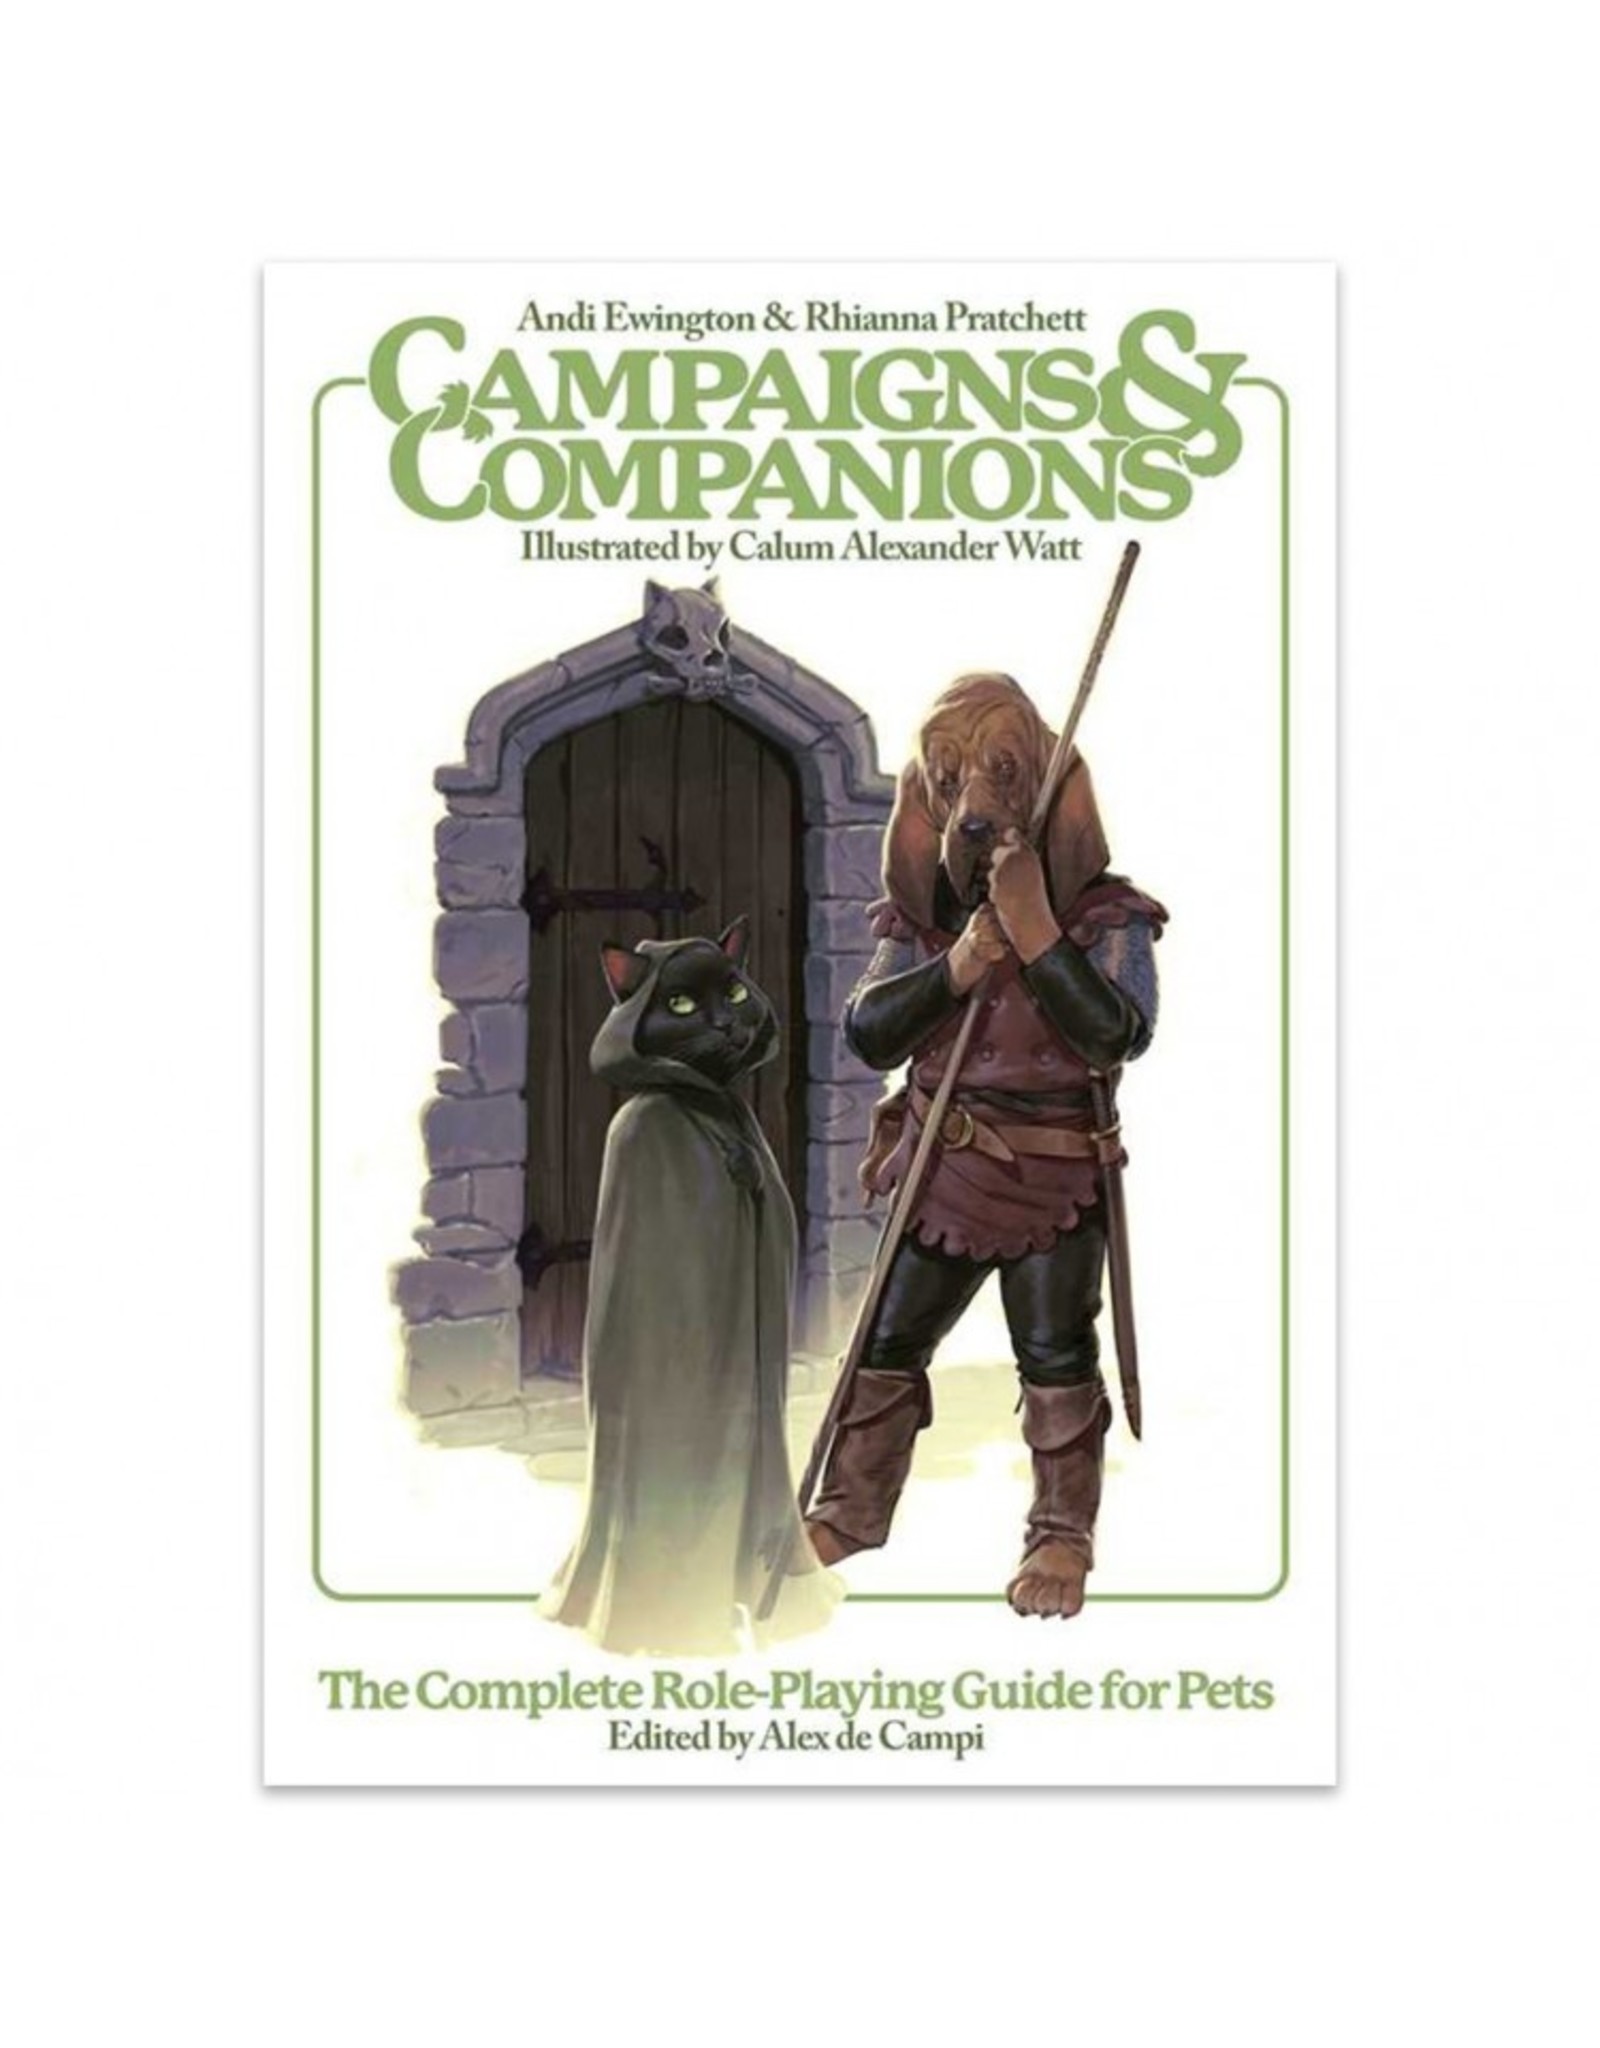 Campaigns & Companions